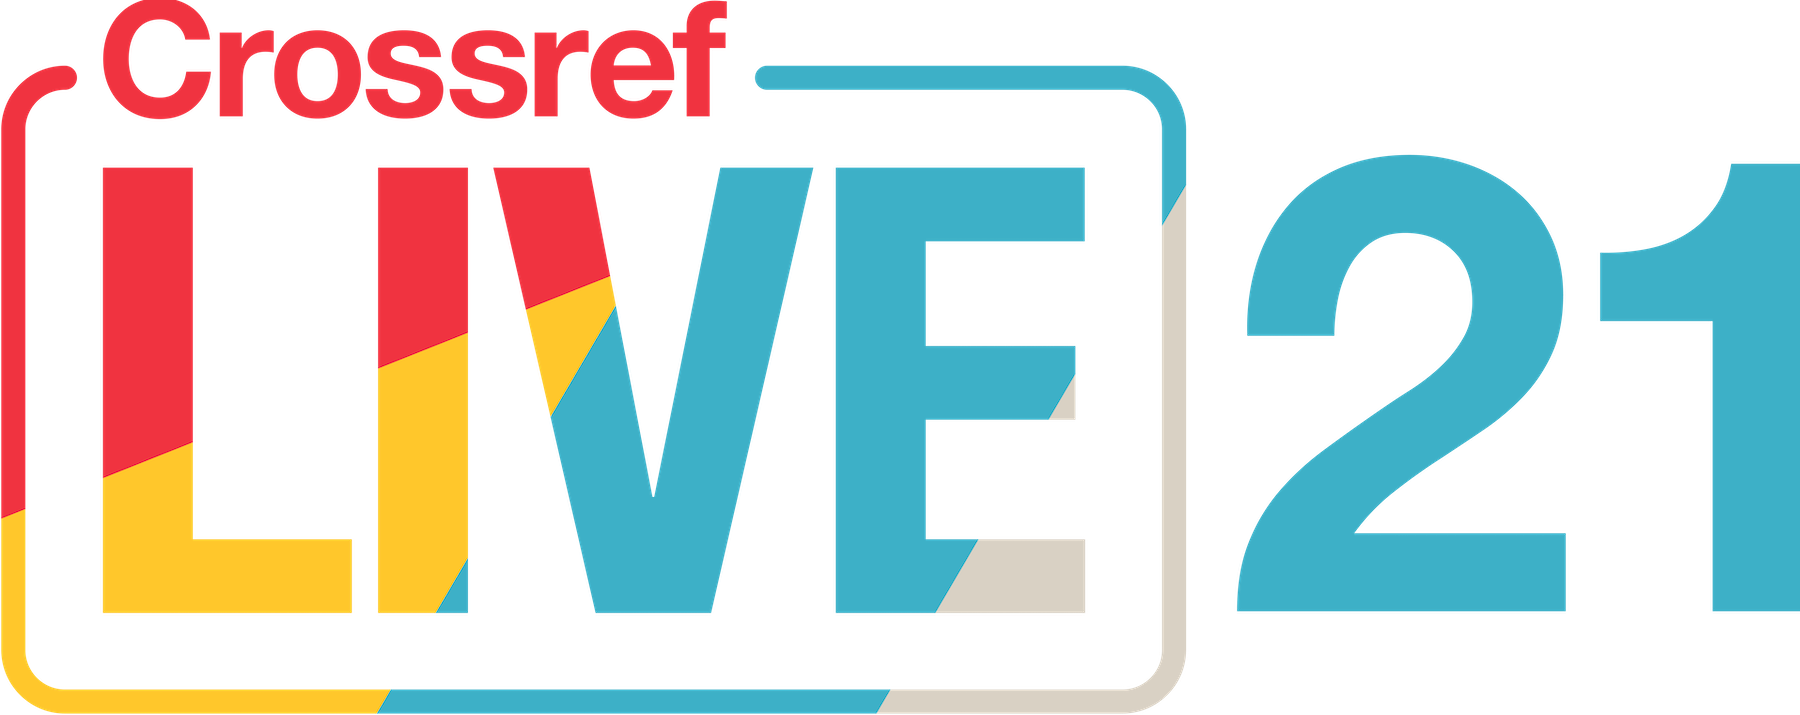 Crossref LIVE21 logo